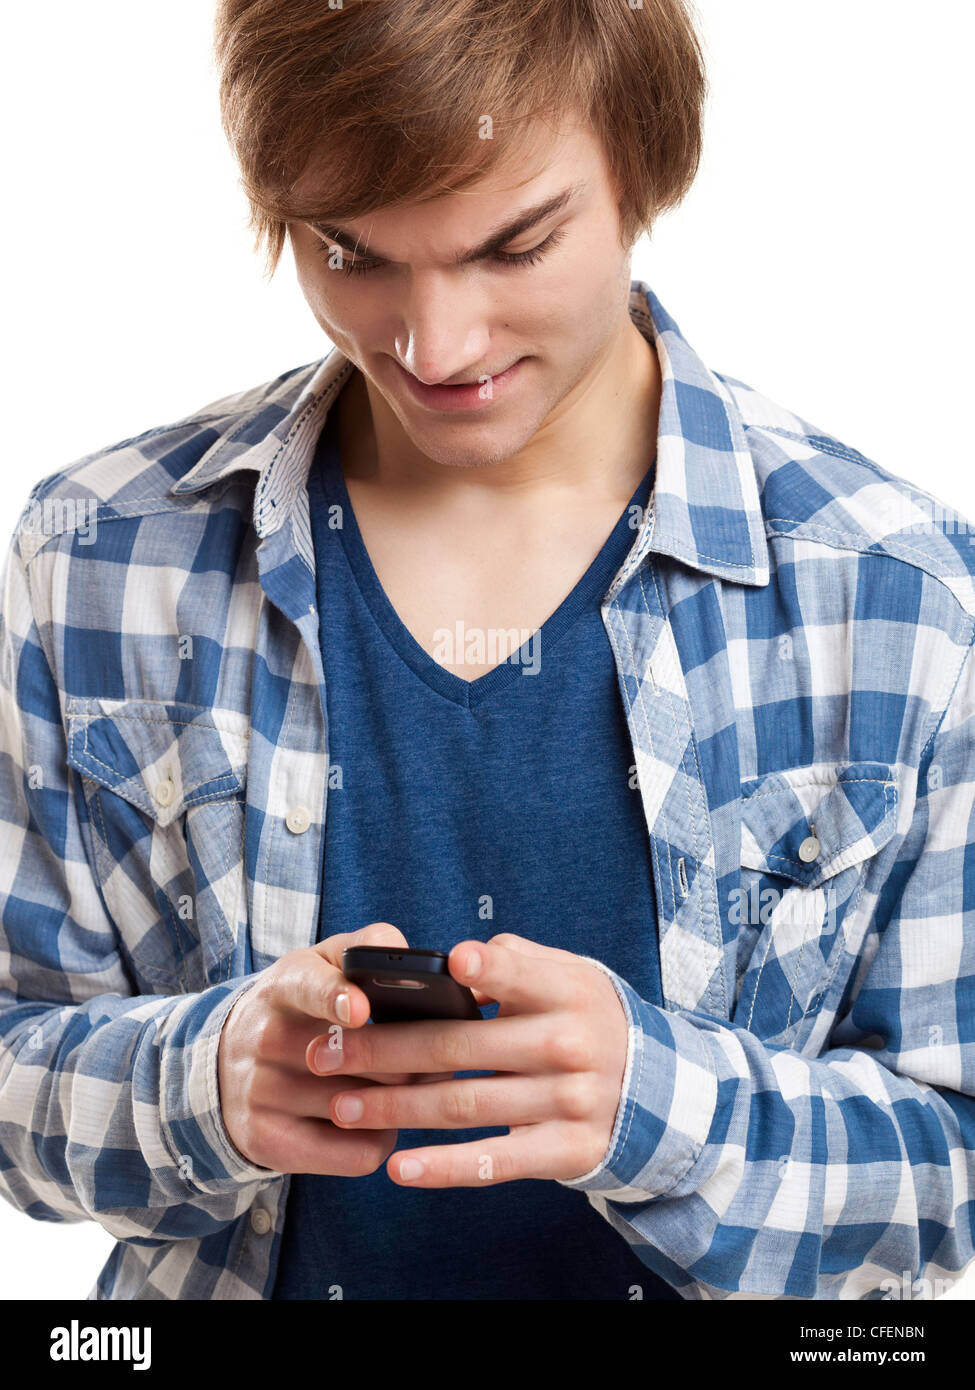 Ritratto di bel giovane l'invio di messaggi di testo con il telefono cellulare, isolato su sfondo bianco Foto Stock